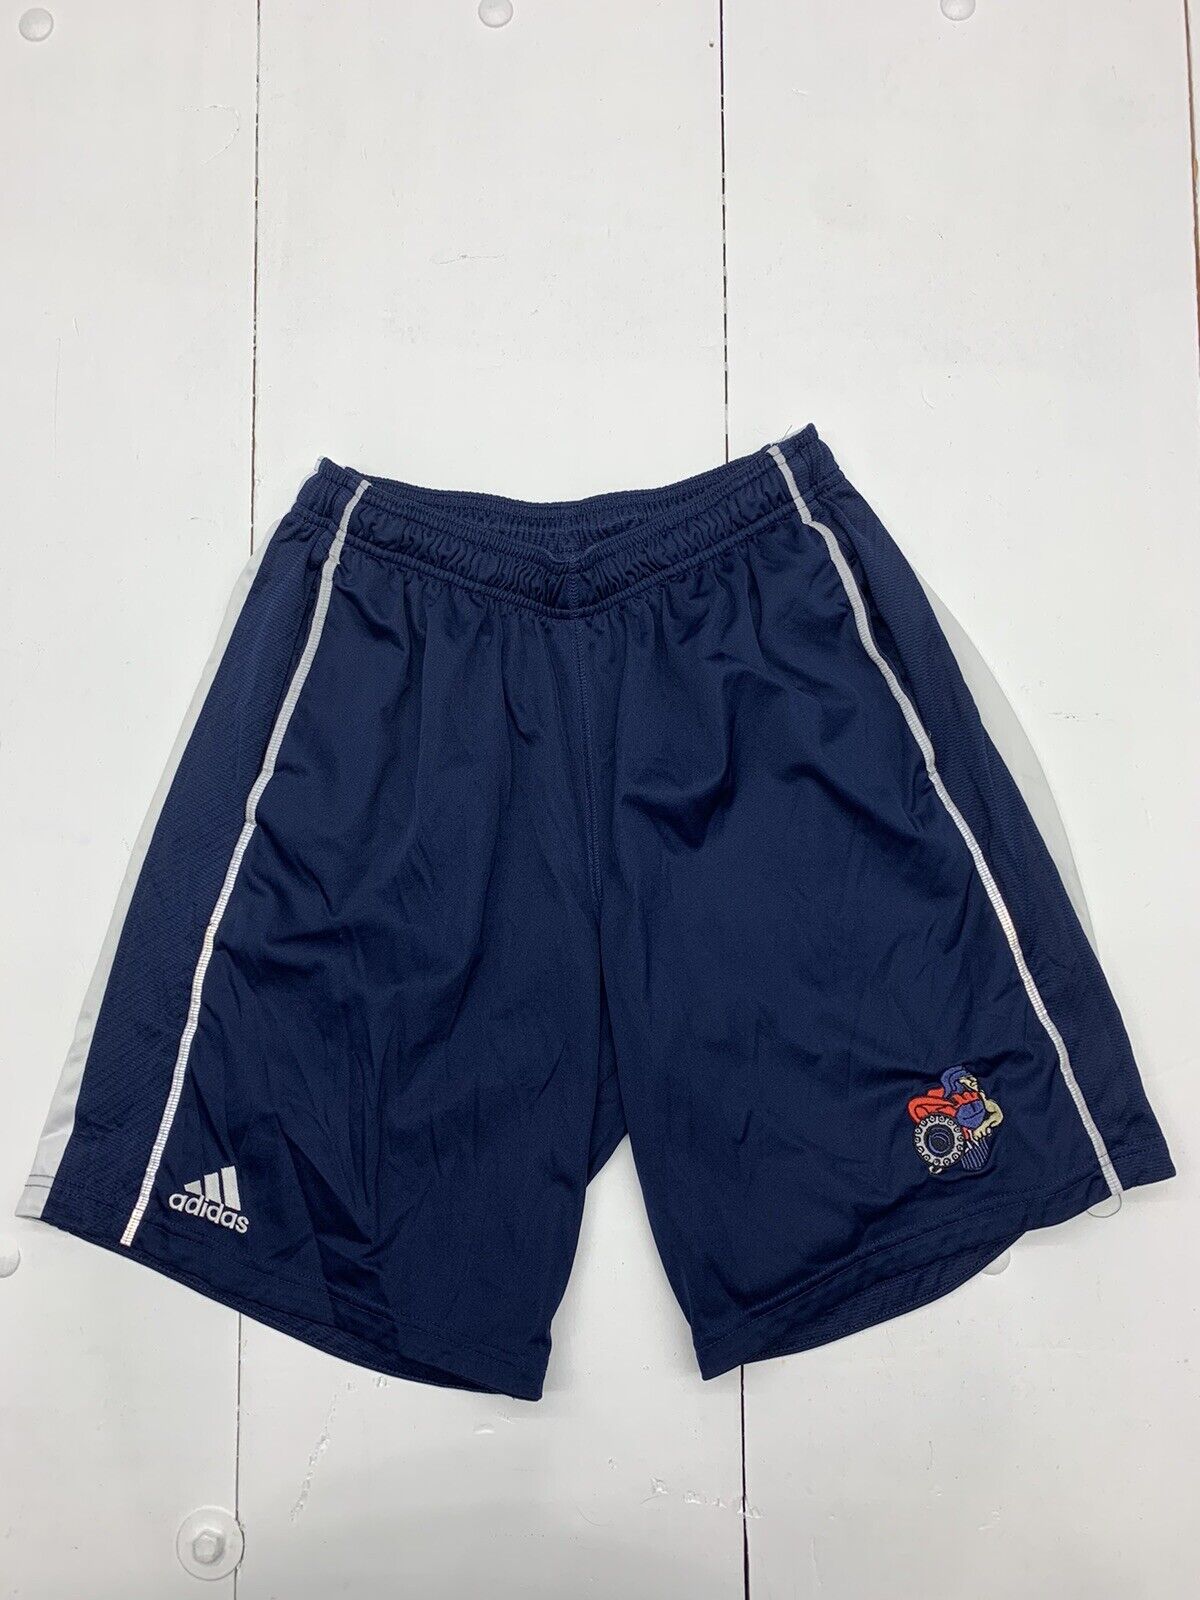 Adidas Mens Blue Athletic Shorts Size Medium